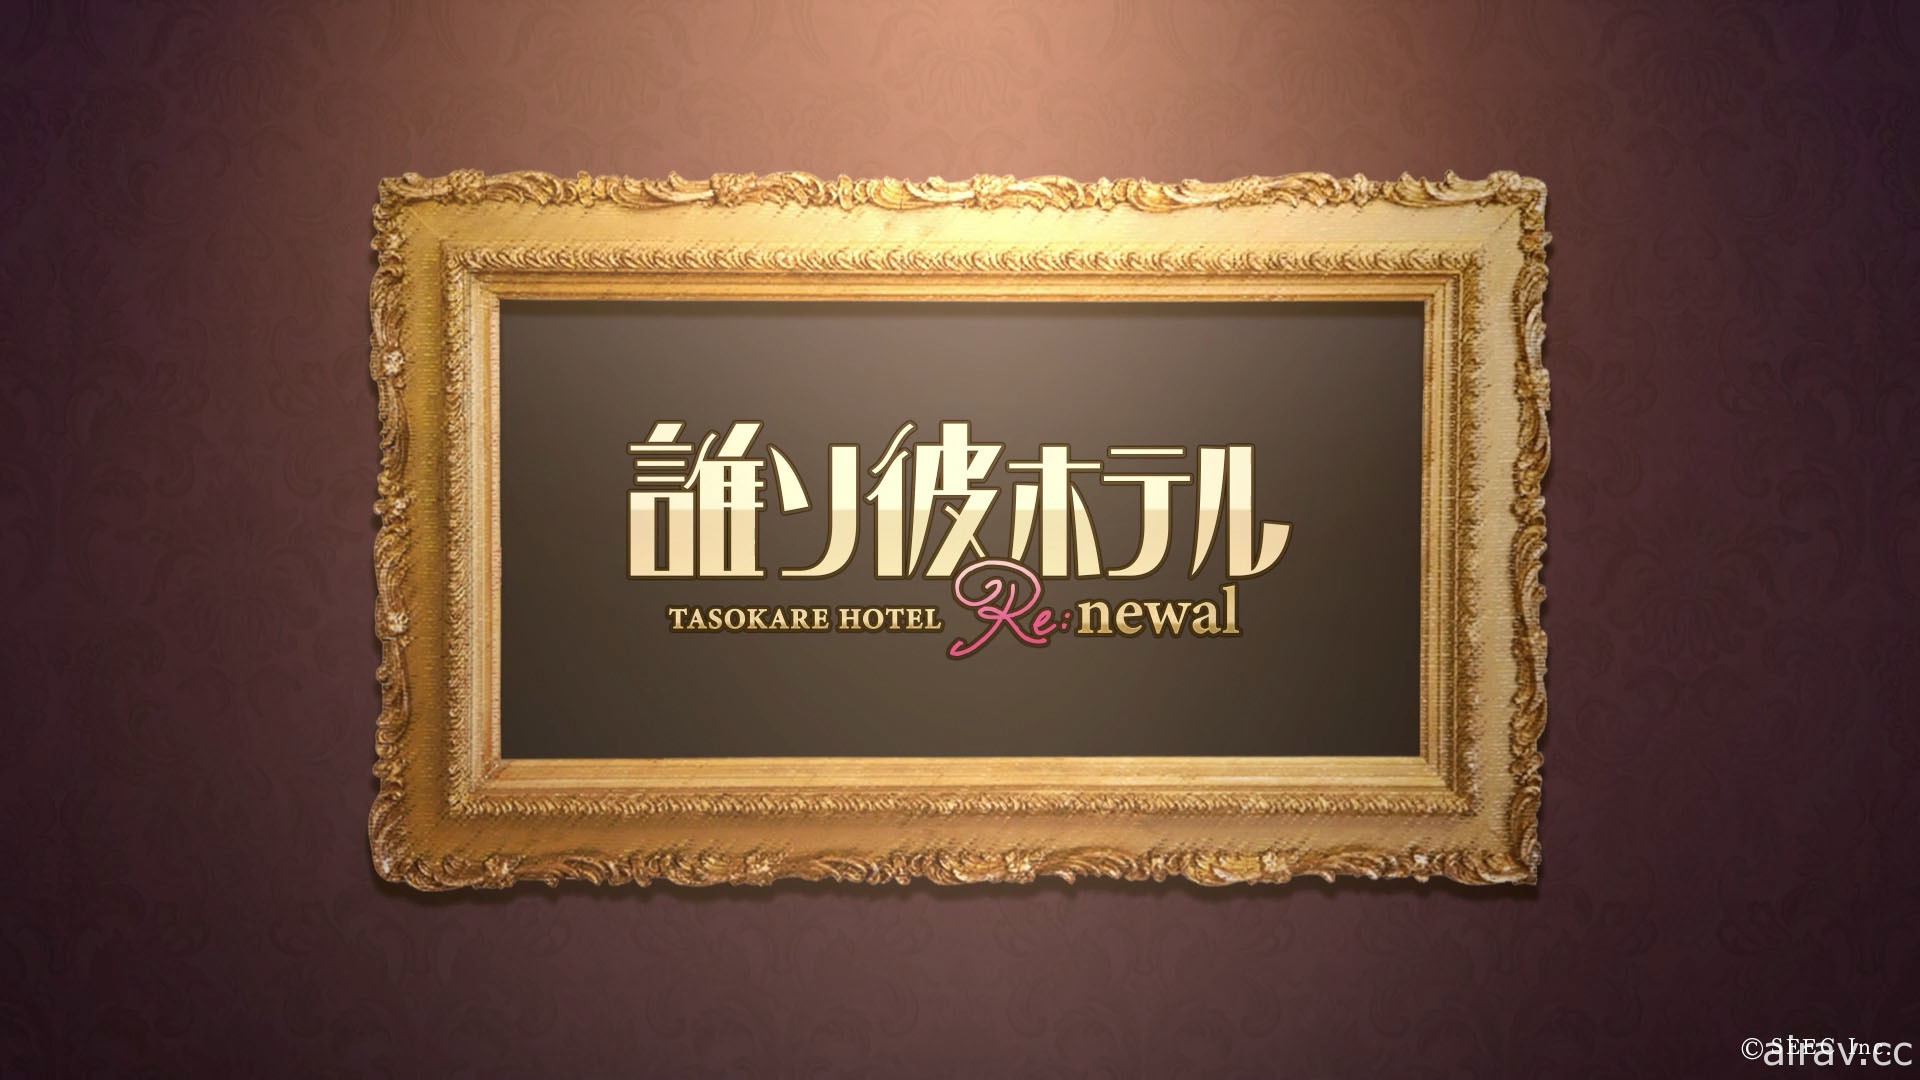 重製版《黃昏旅店 Re:newal》釋出主人公「塚原音子」角色語音 PV